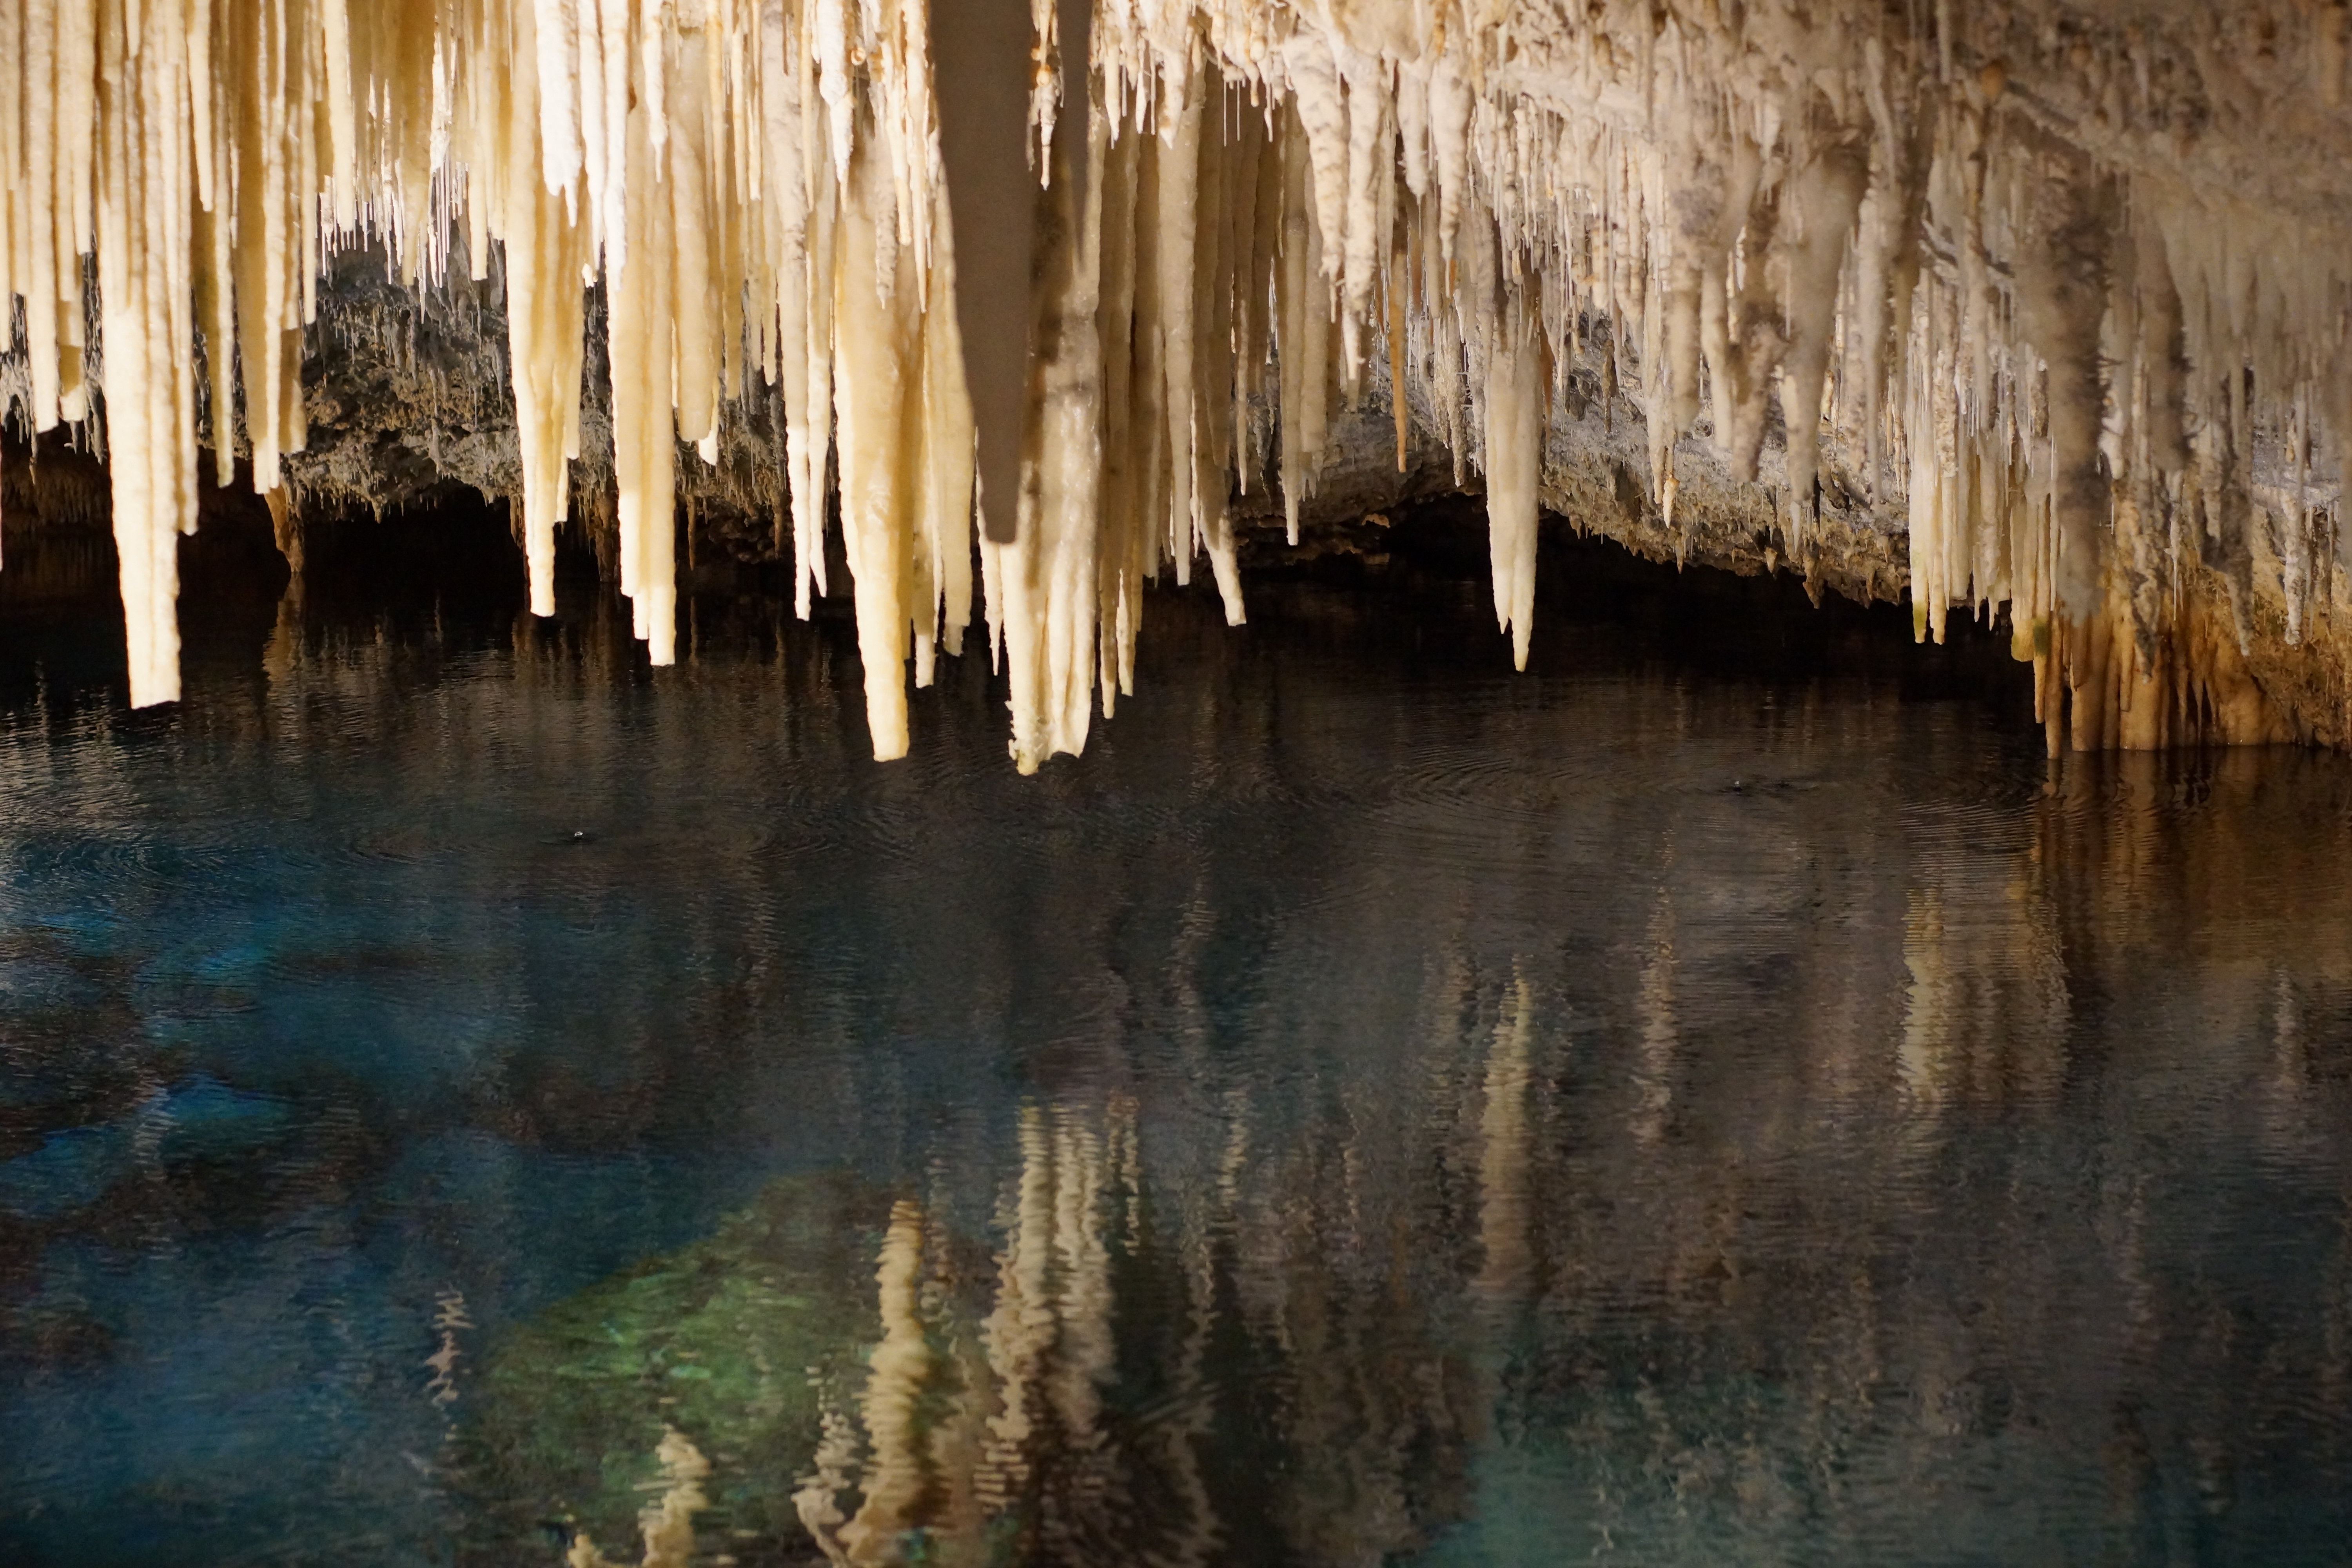 水晶洞（Crystal cave）和幻影洞（Fantasy Cave），两个溶洞相隔不远，可以一次行